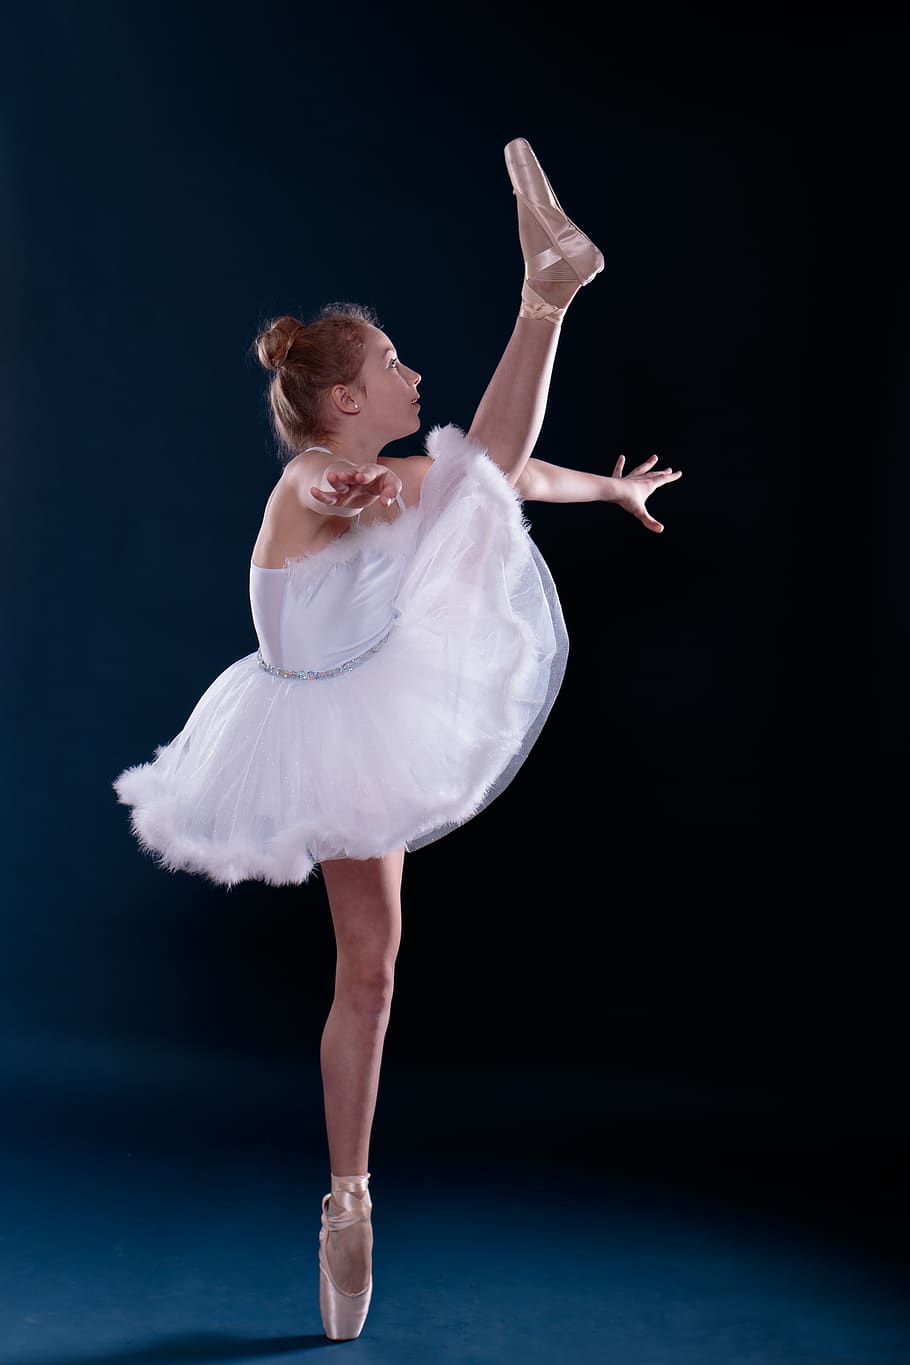 ballet, dancing, ballerina, child, teen, teenager, balance, sports, girl, ballet dancer